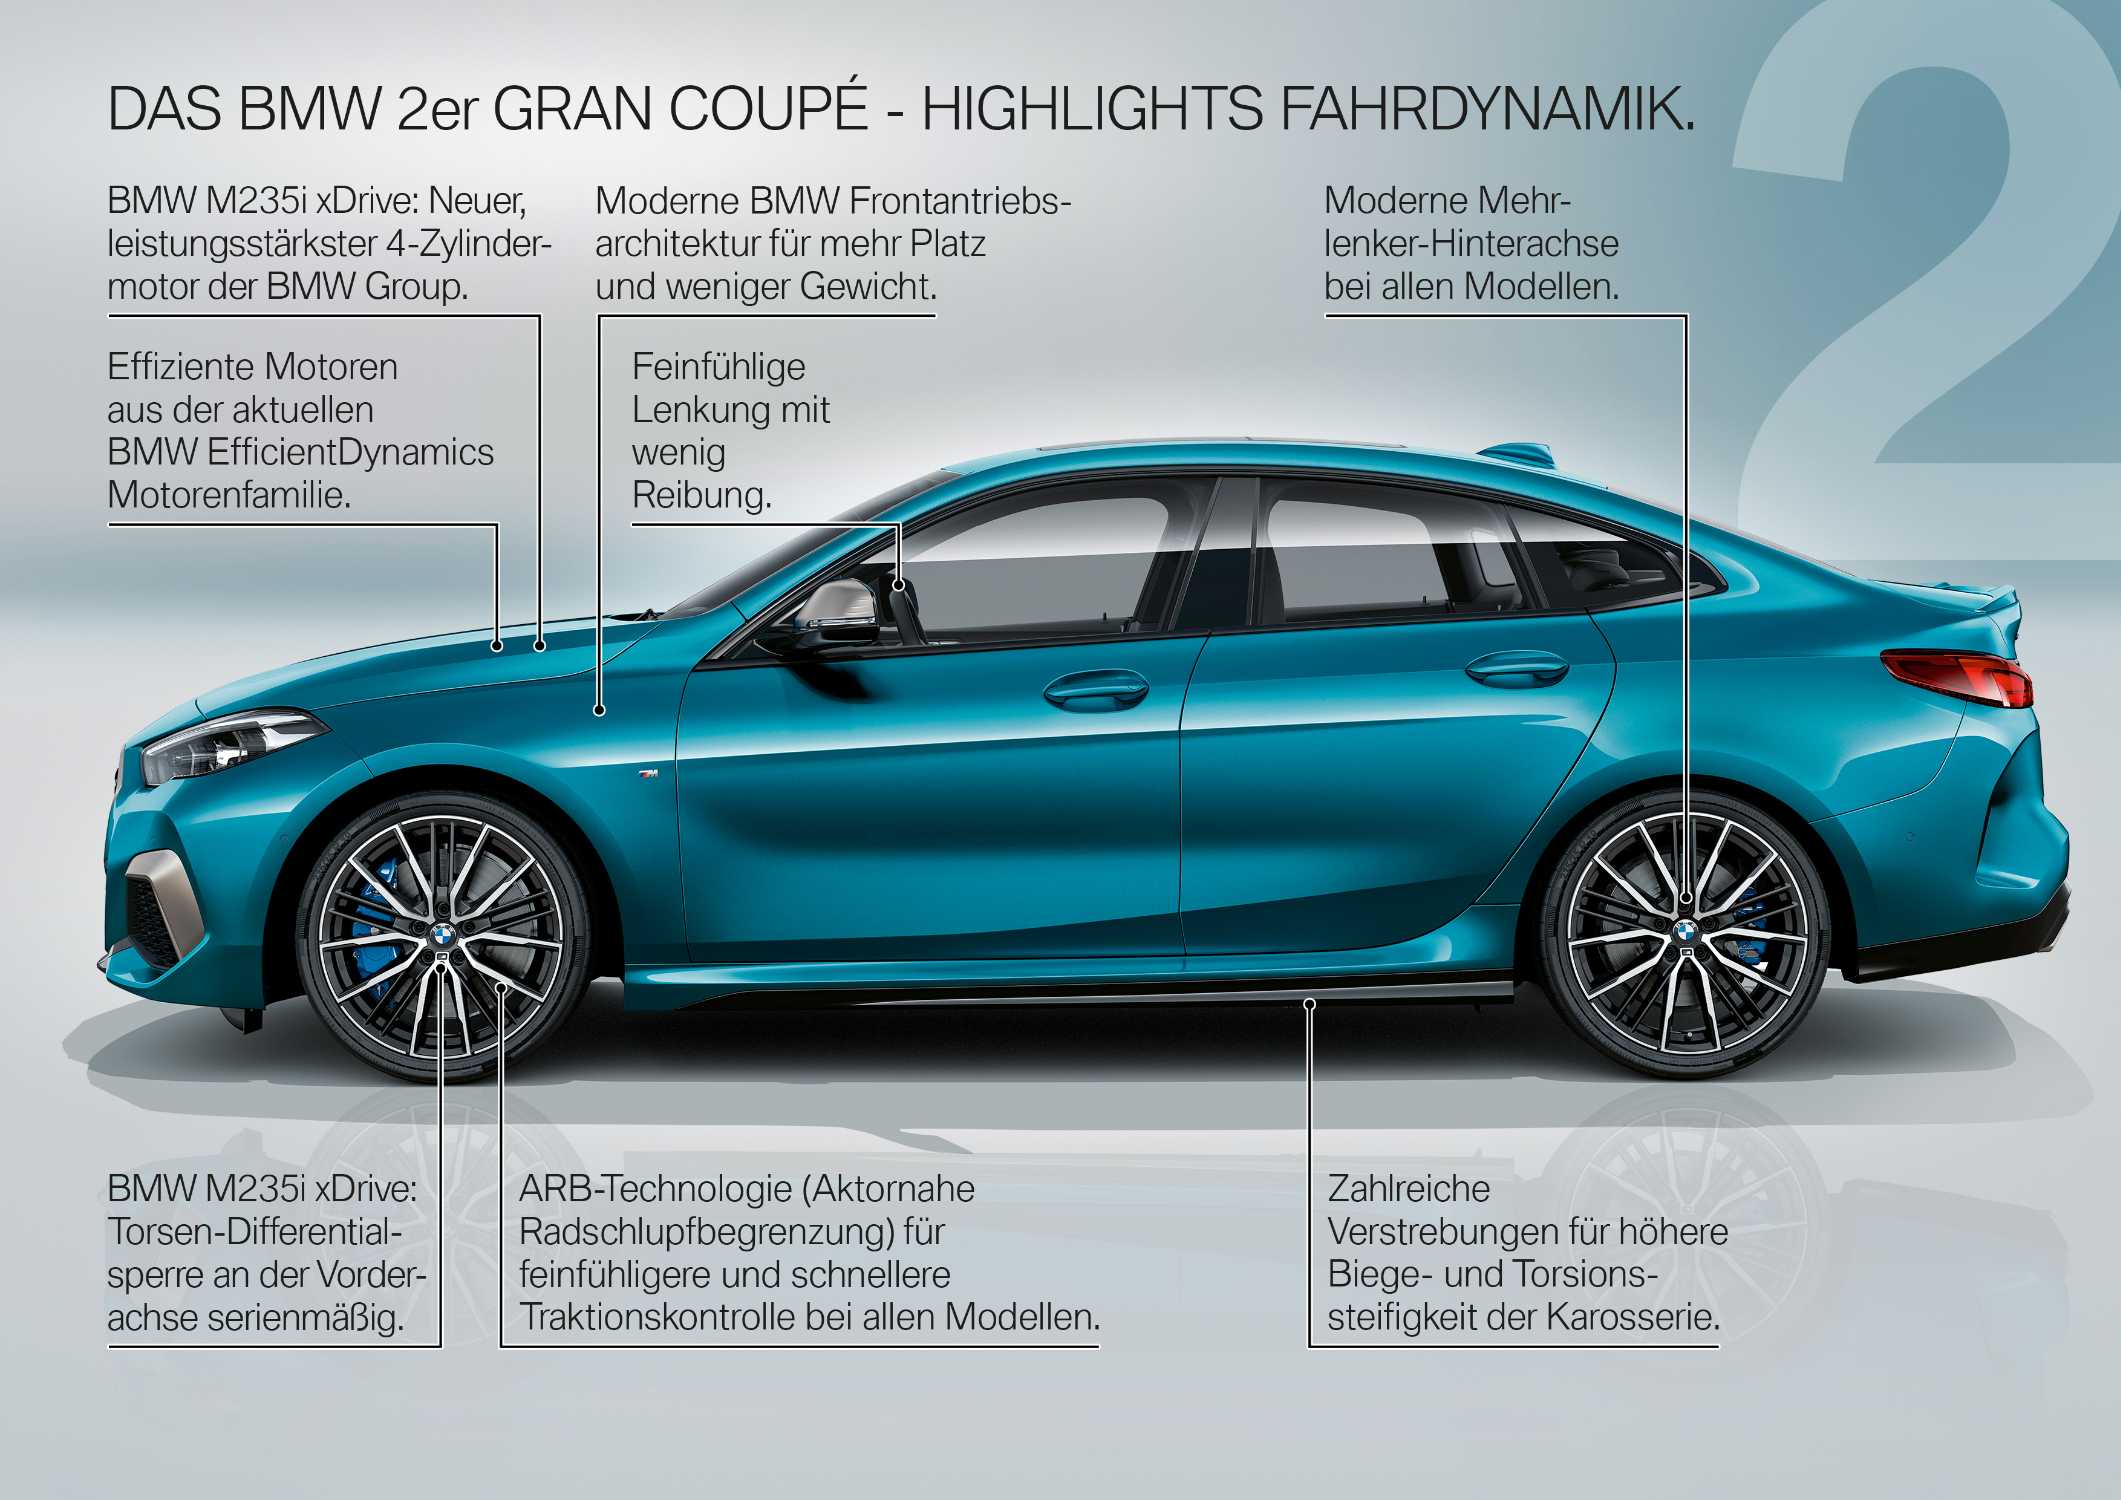 Das neue BMW 2er Gran Coupé – Produkt Highlights (10/2019).